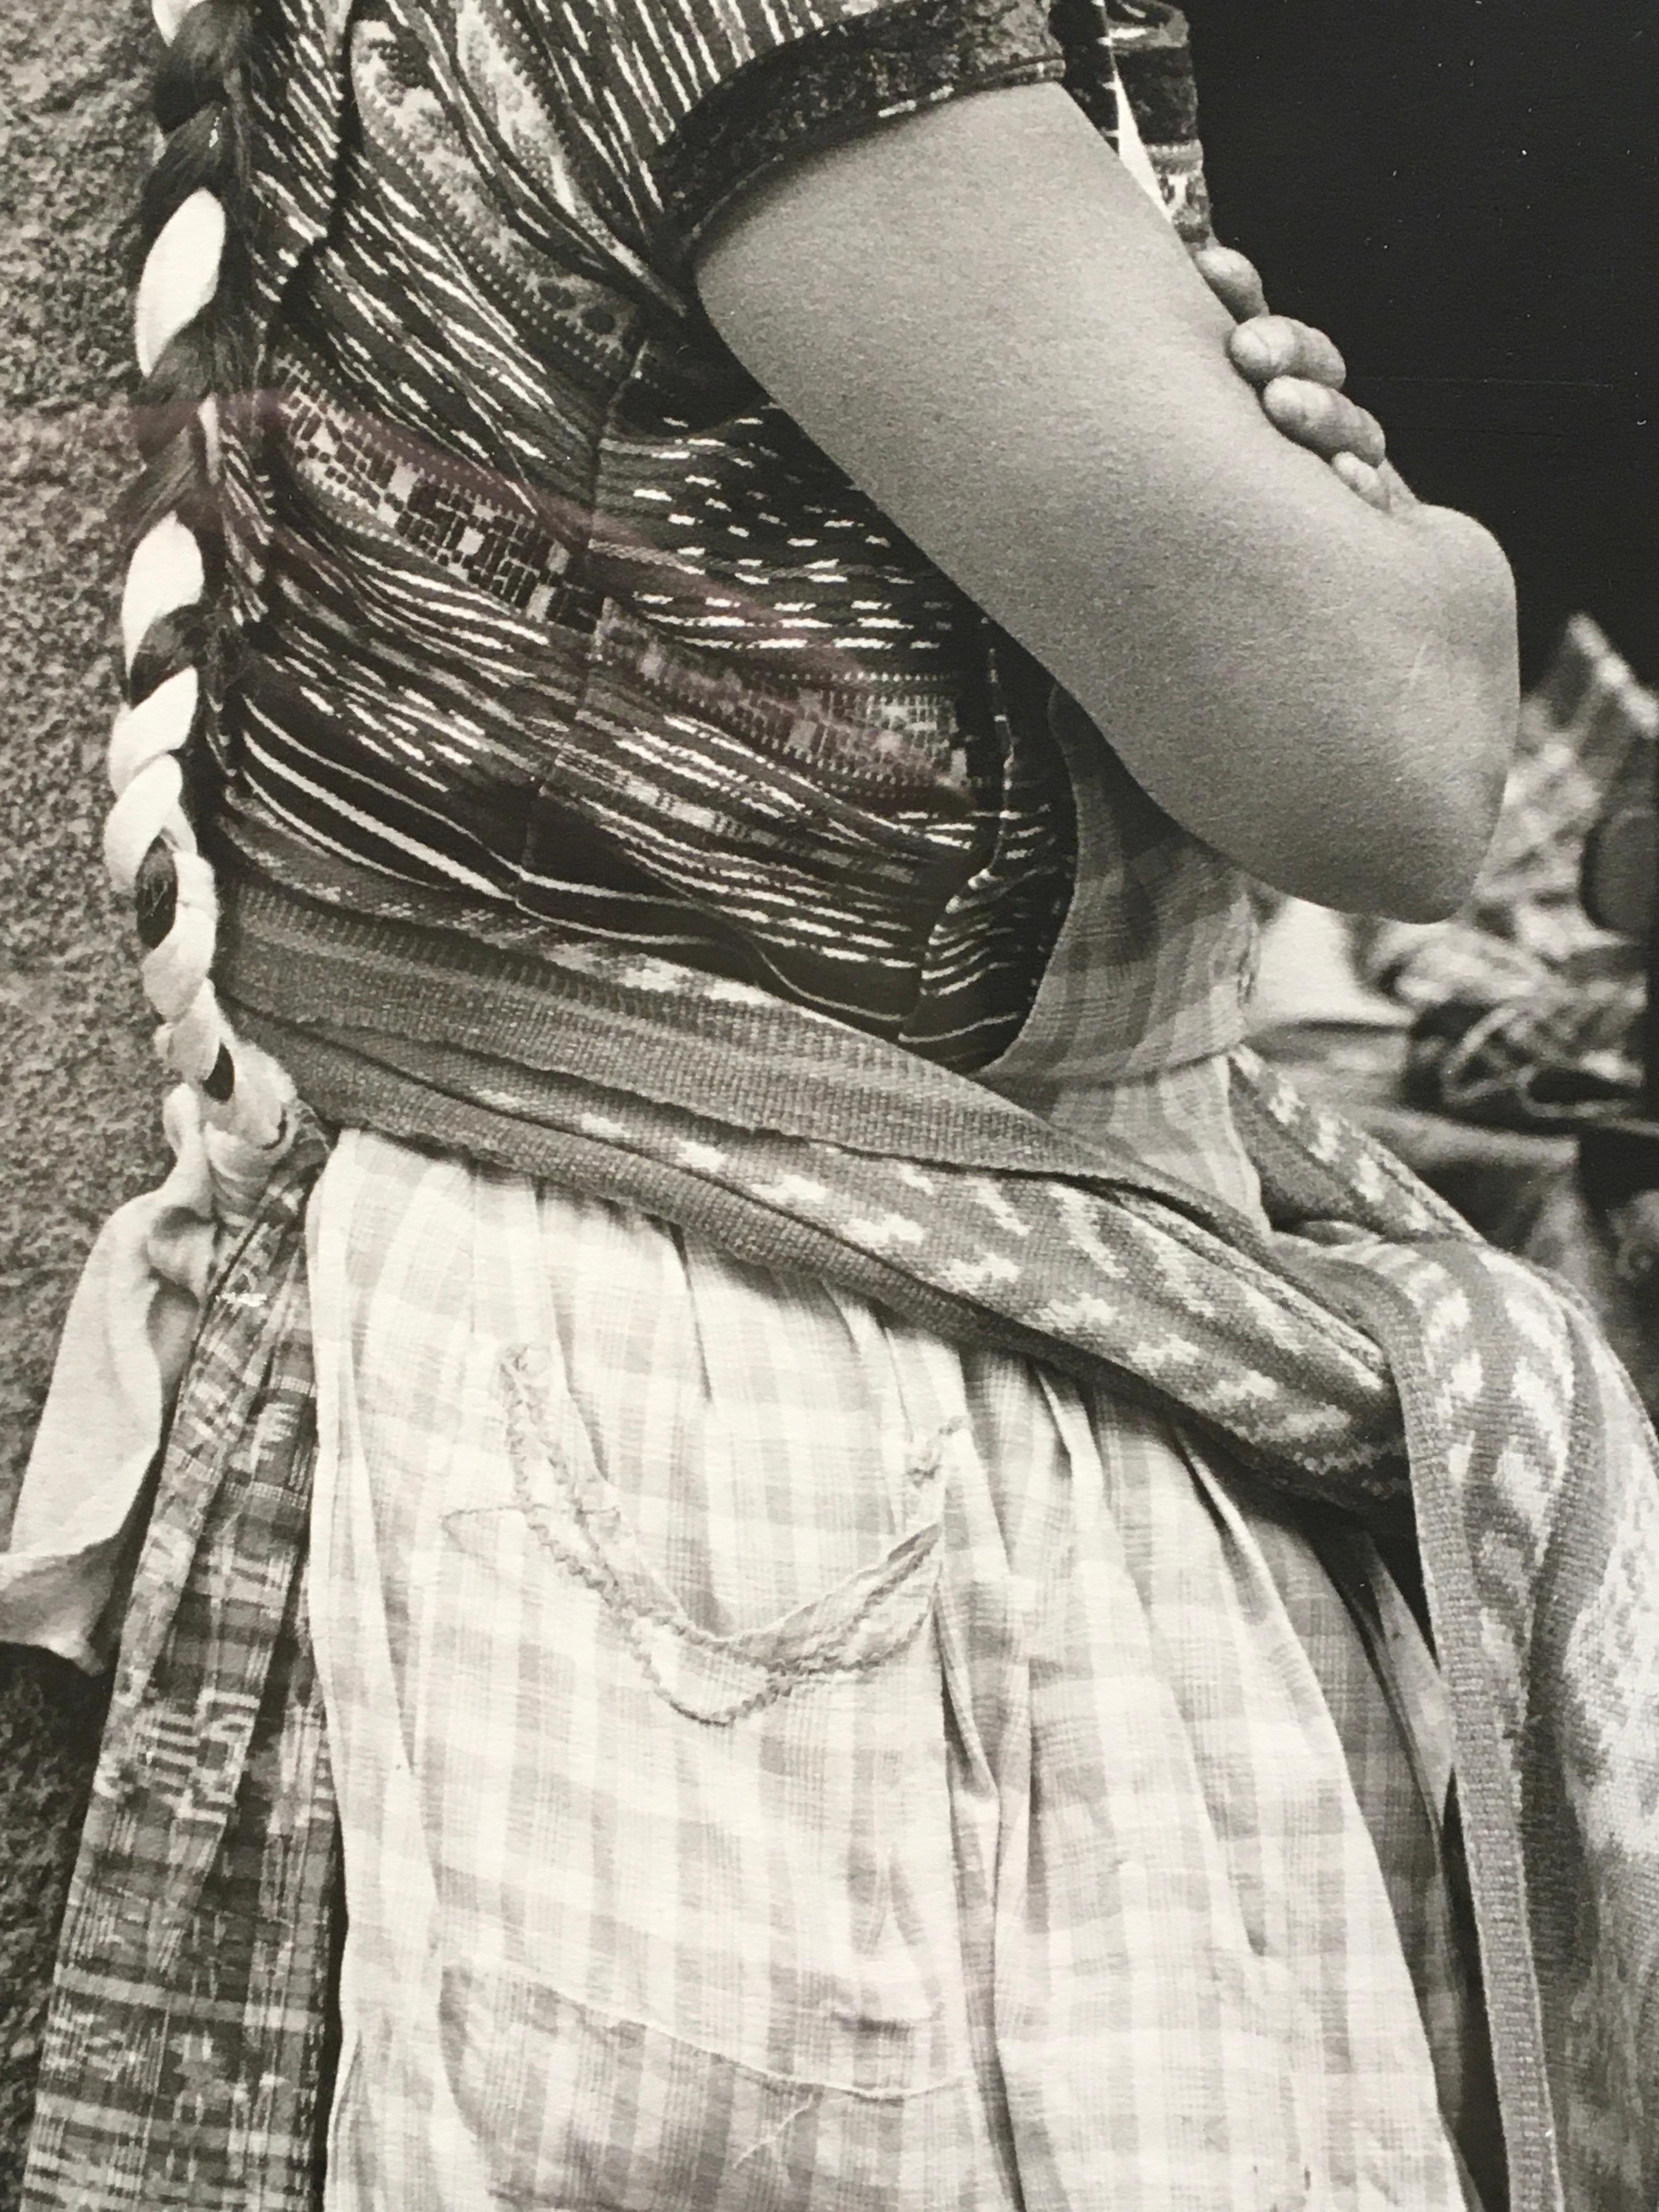  Vintage-Porträt einer indigenen Frau